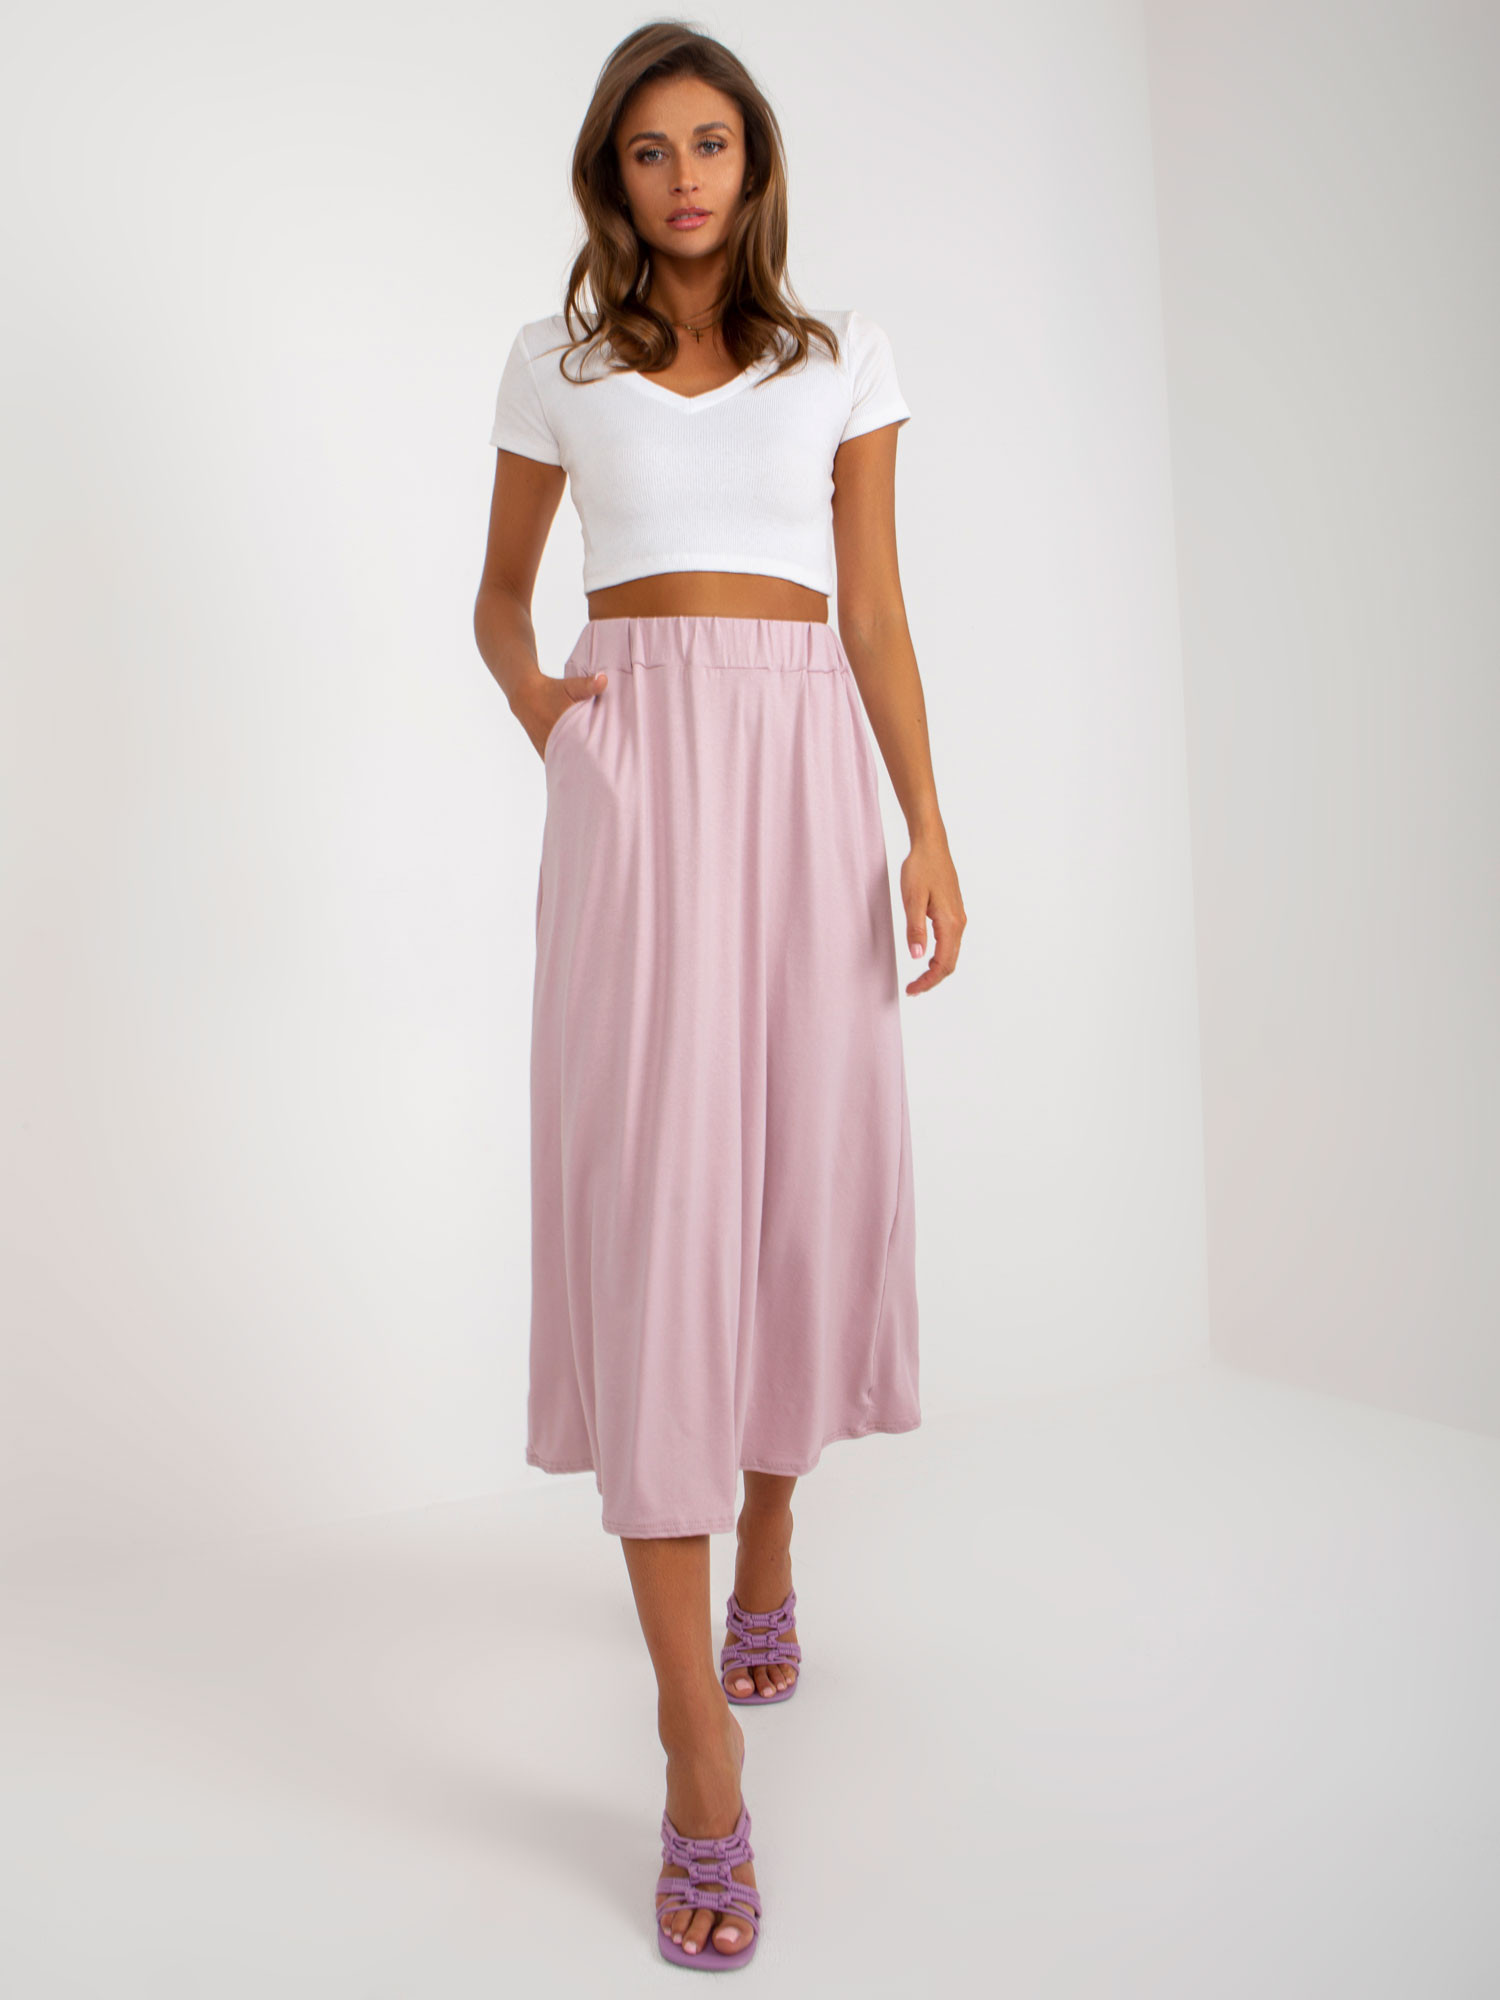 Dámská sukně WN SD model 18722599 Pudr růžová pudrovorůžová S/M - FPrice